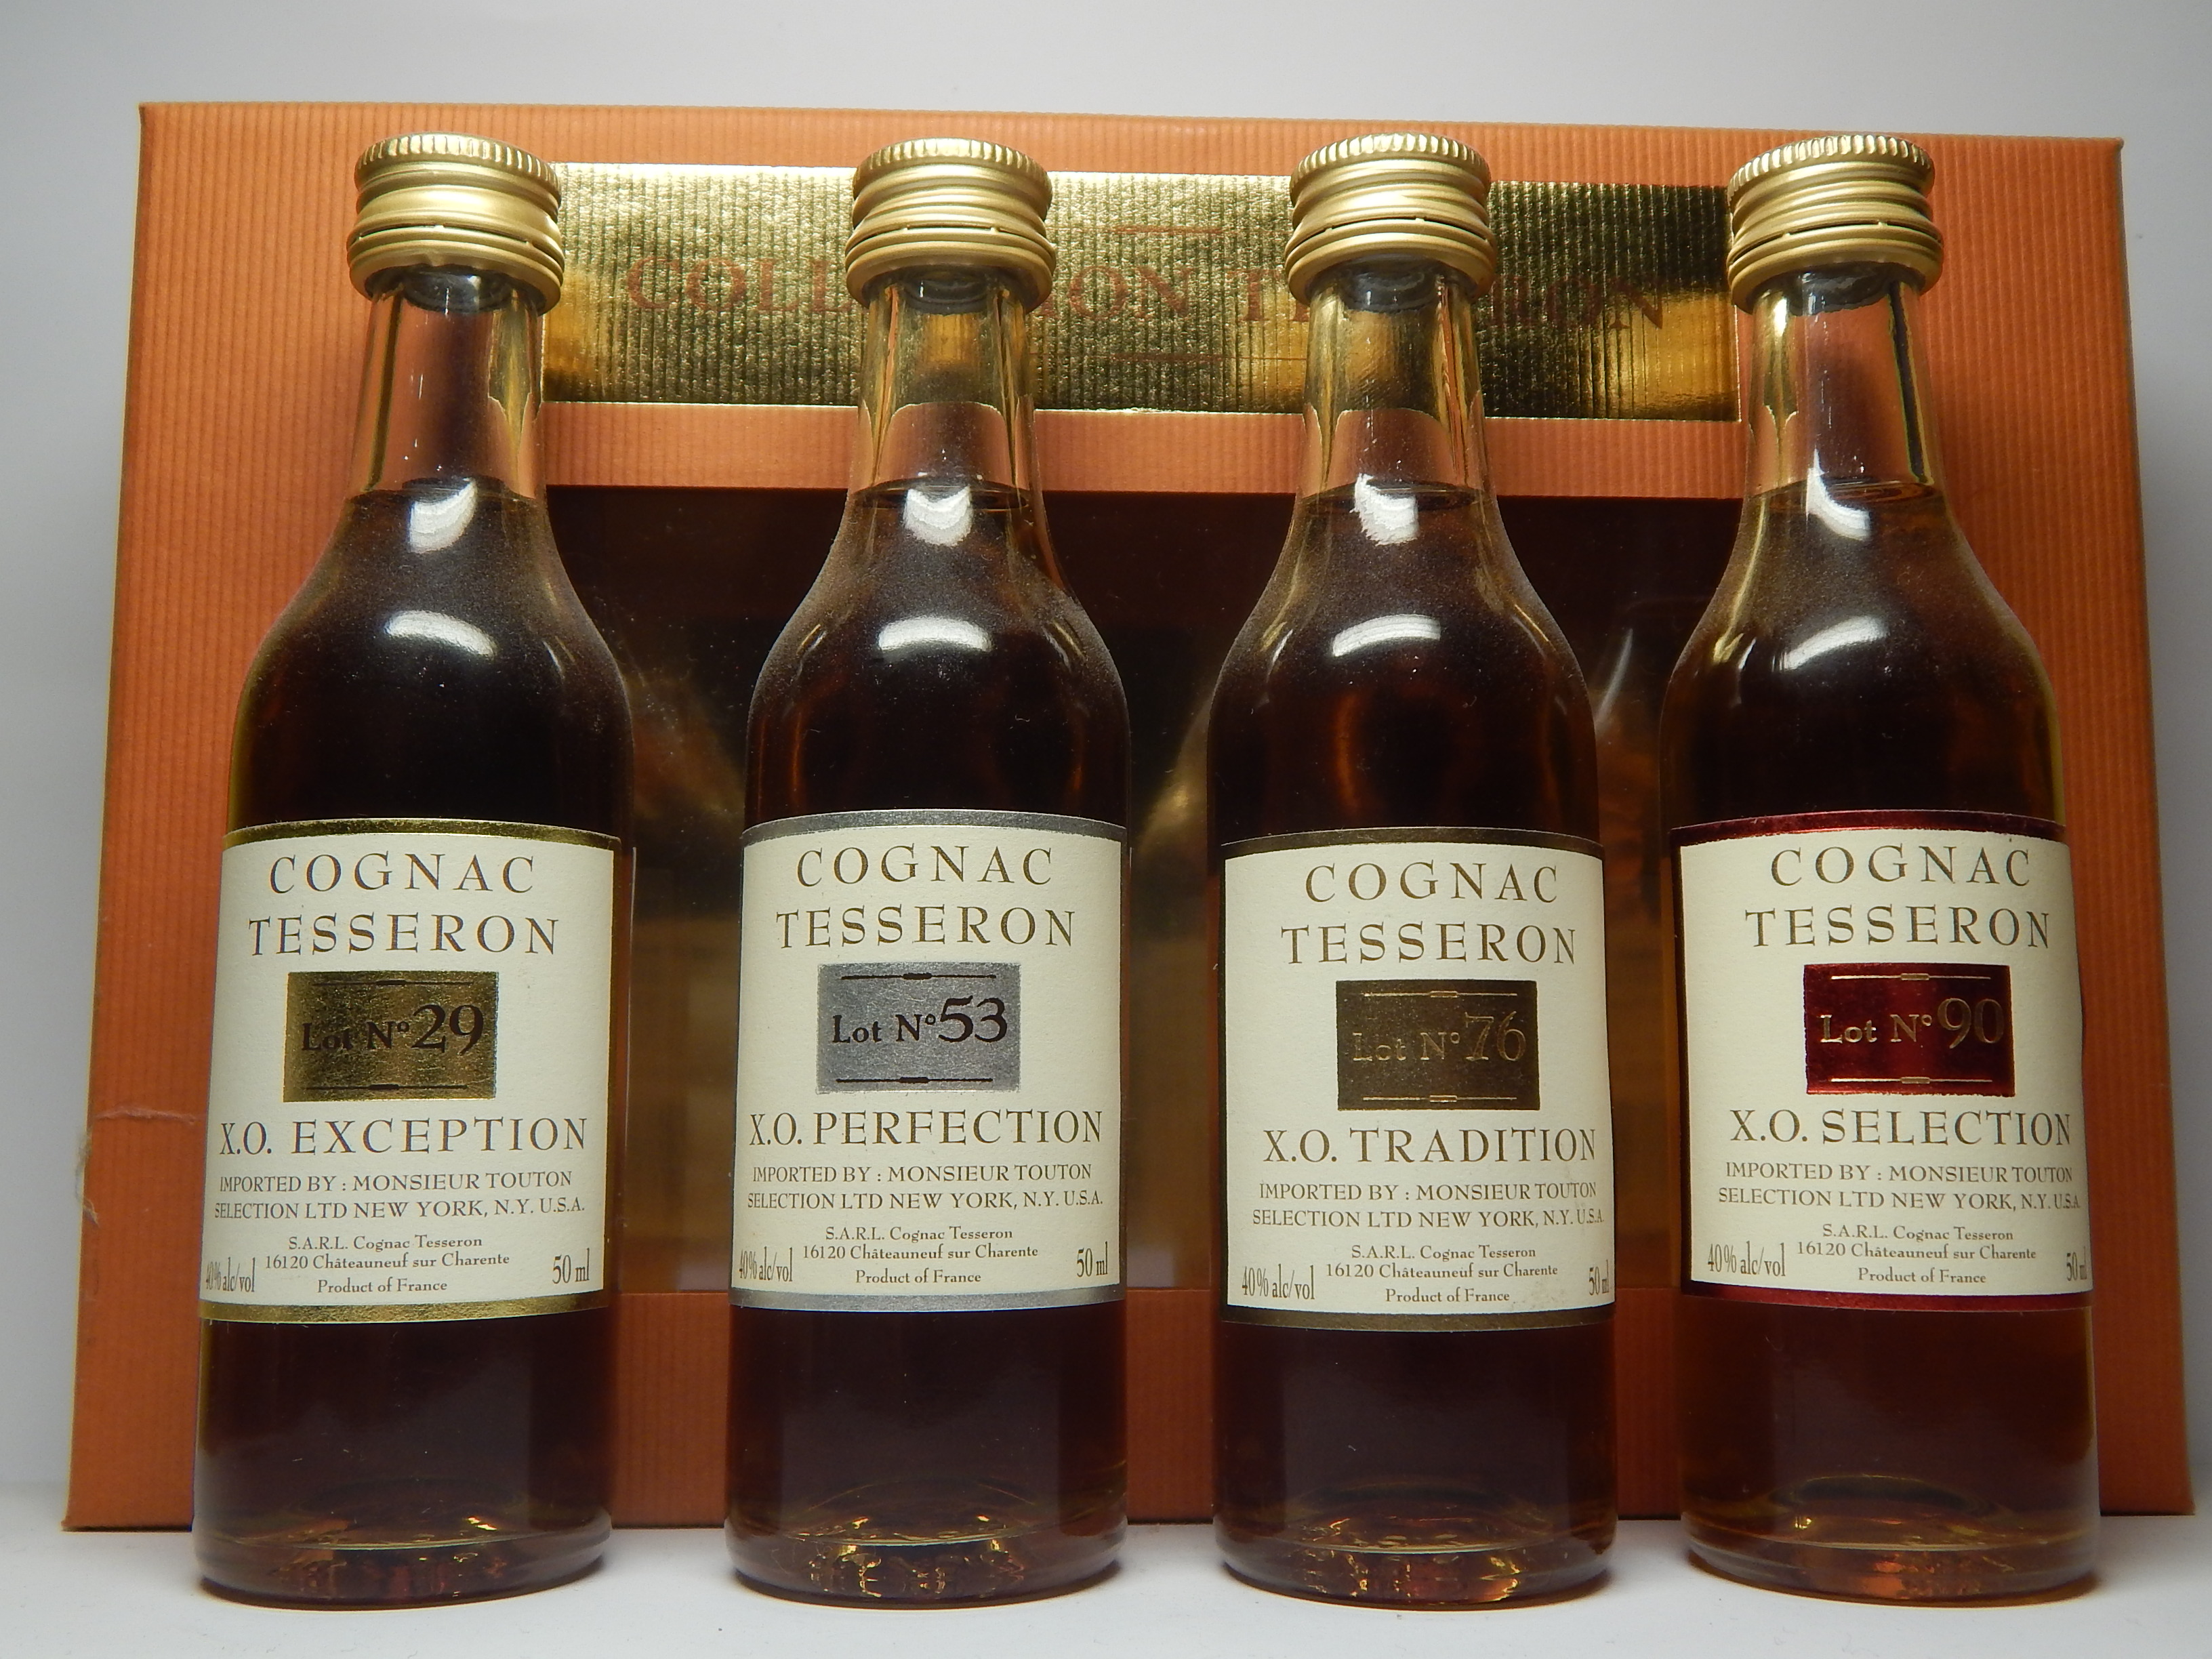 X.O. No`29,53,76,90 Cognac.